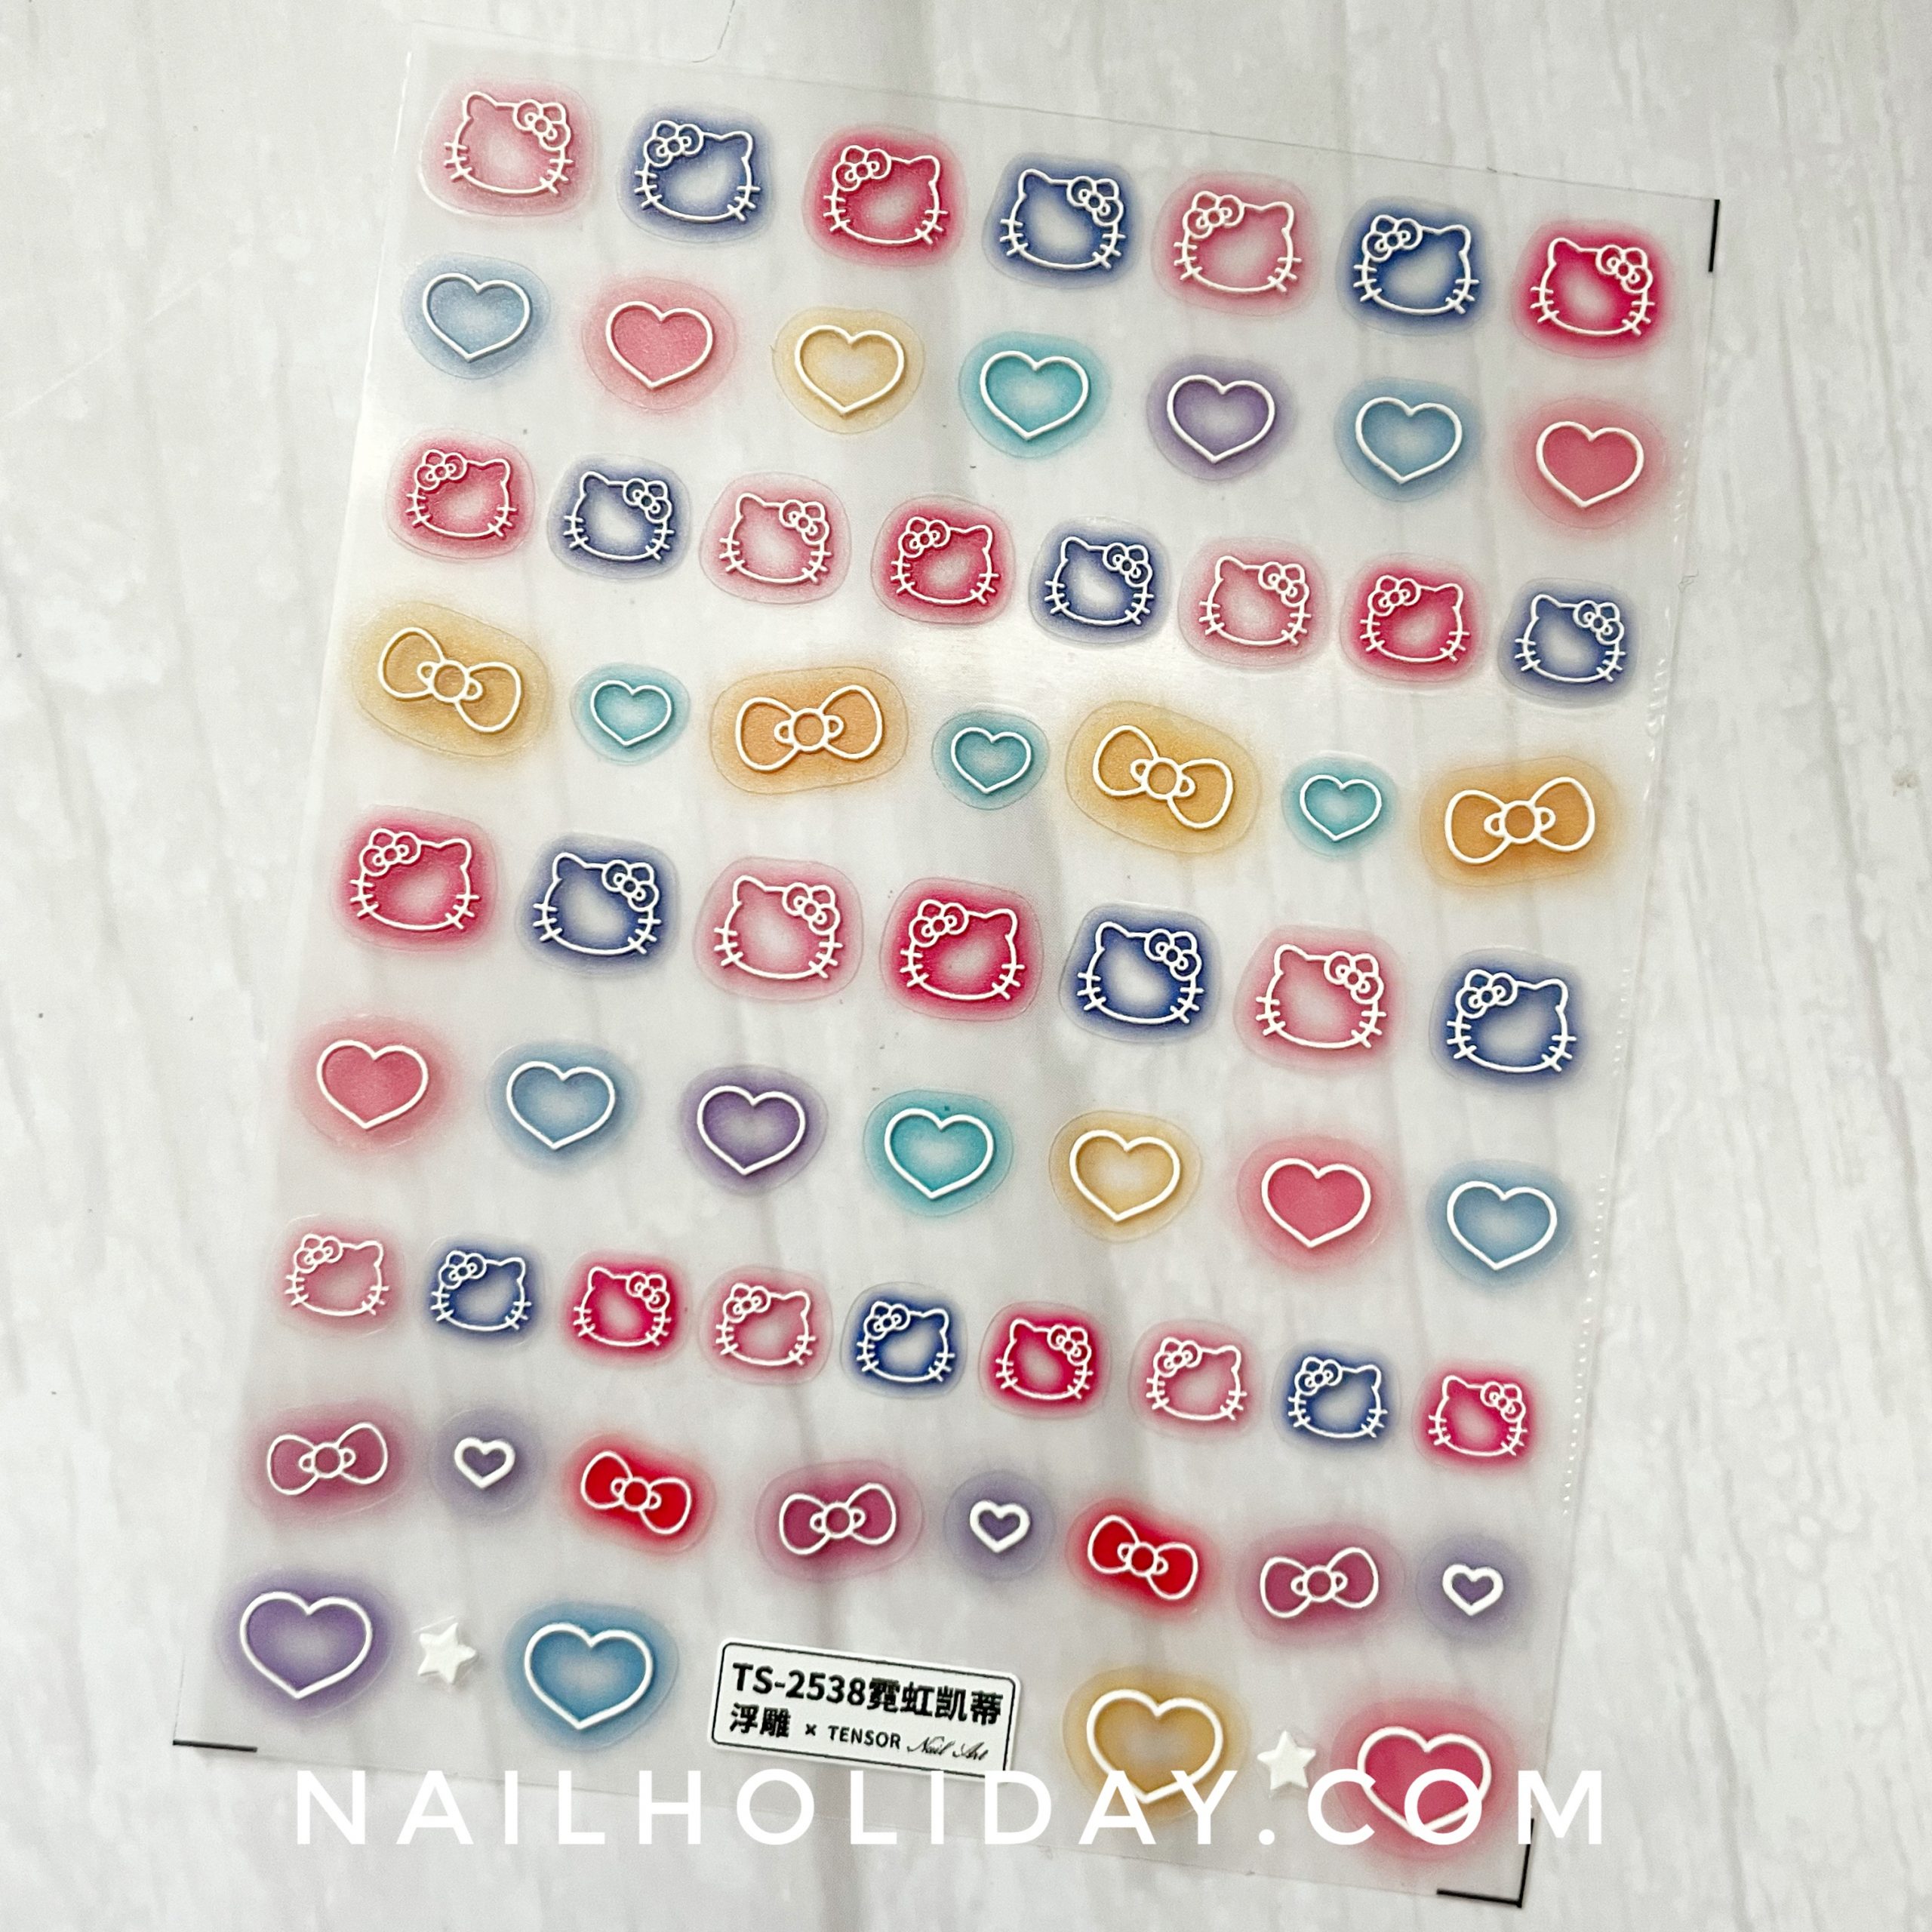 5D Kaws Hello Kitty Nail Stickers